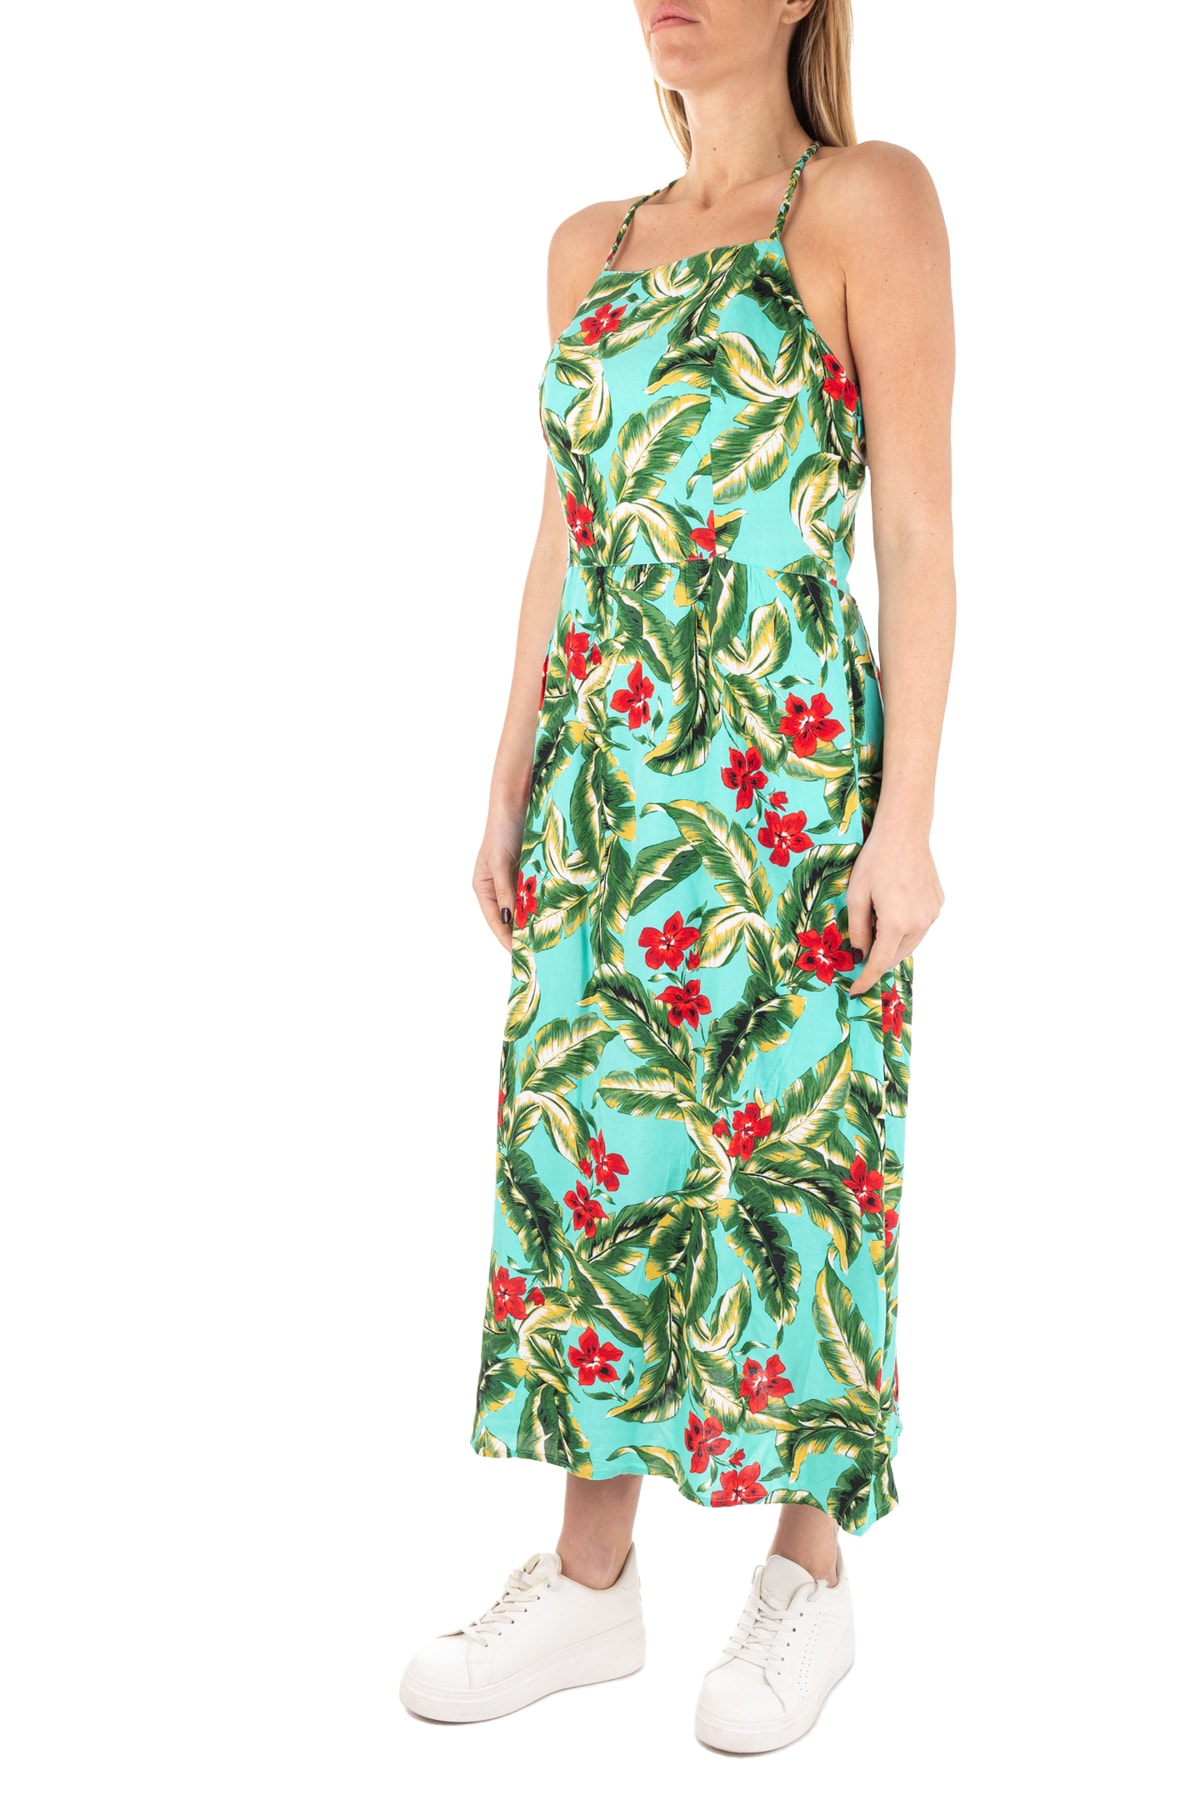 SUPERDRY Kleid Mehrfarbig A-Linie Fast ausverkauft